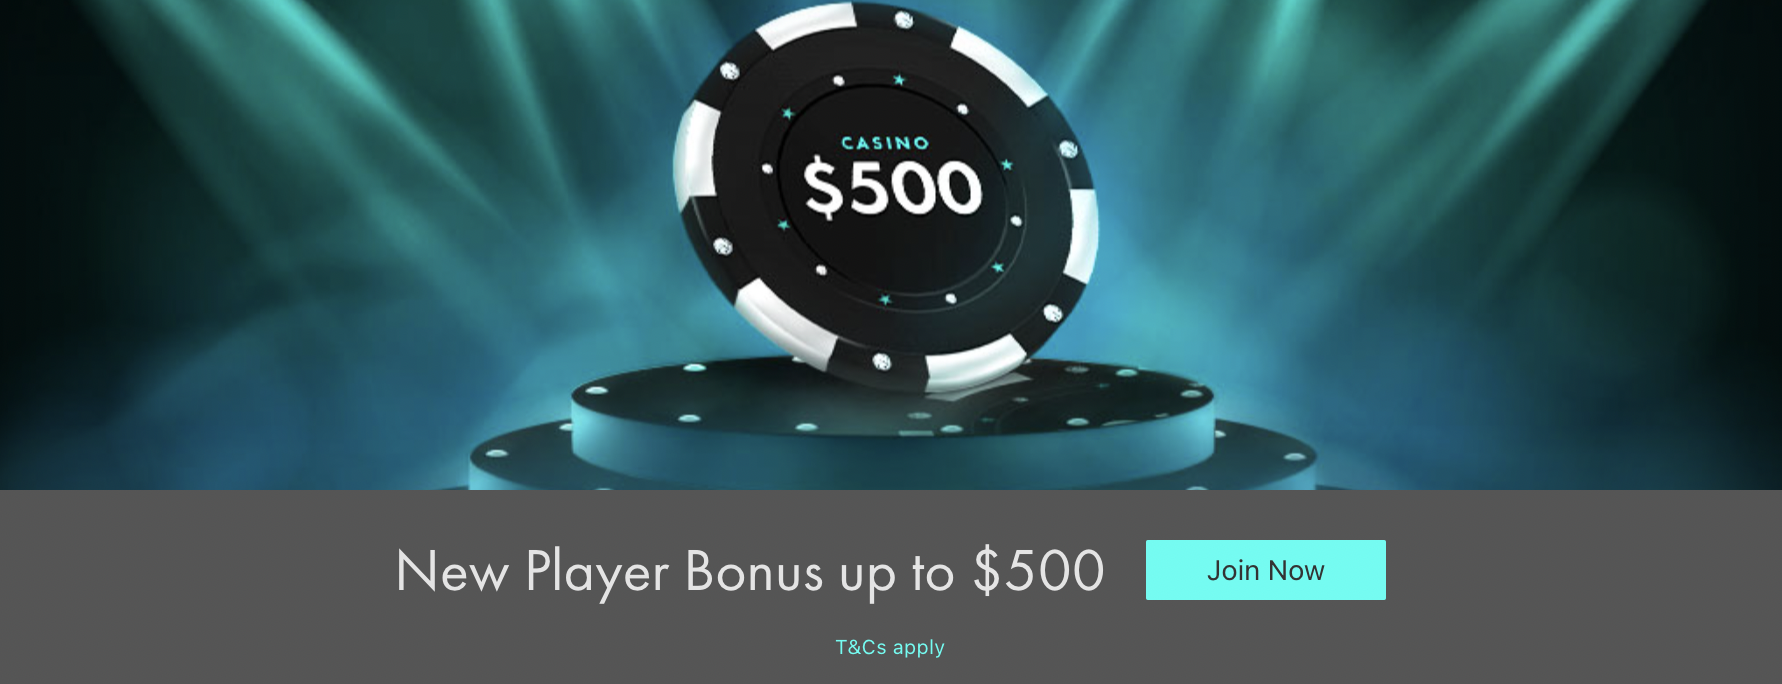 bet365 Online Casino - $500 Match Deposit Welcome Offer